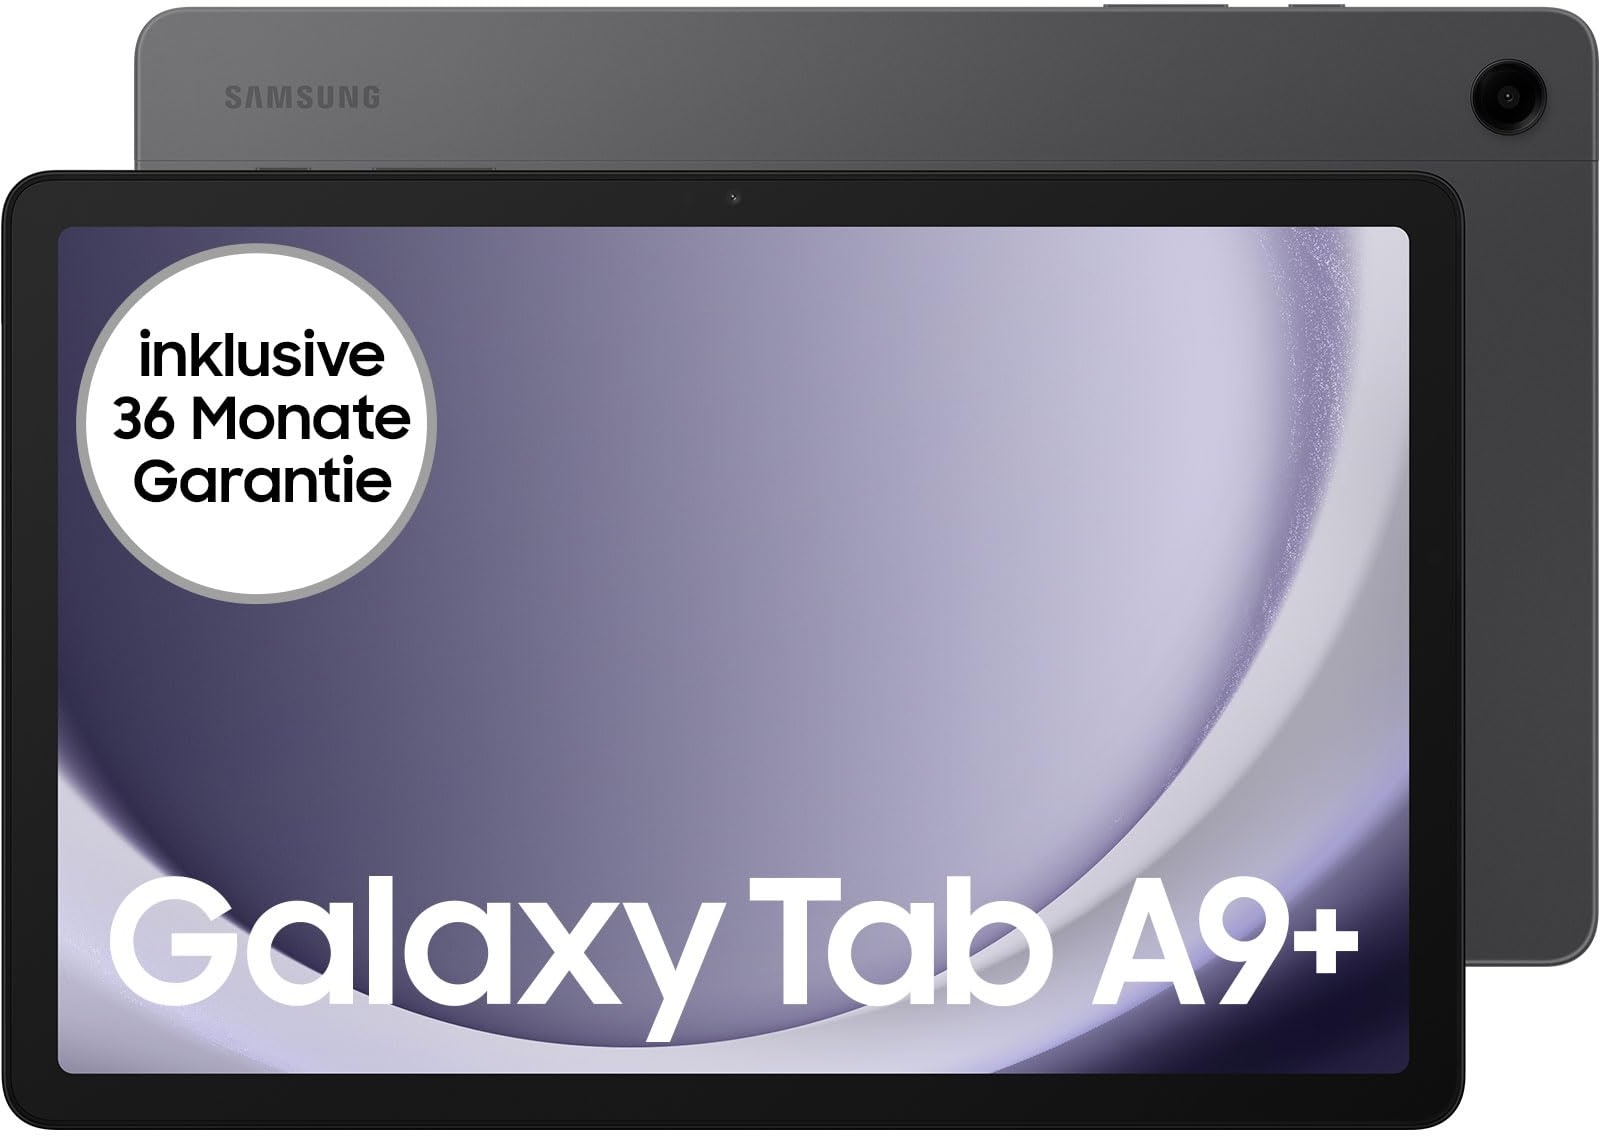 Samsung Galaxy Tab A9+ Wi-Fi Android-Tablet, 64 GB Speicherplatz, Großes Display, 3D-Sound, Simlockfrei ohne Vertrag, Graphite, Inkl. 3 Jahre Herstellergarantie [Exklusiv bei Amazon]